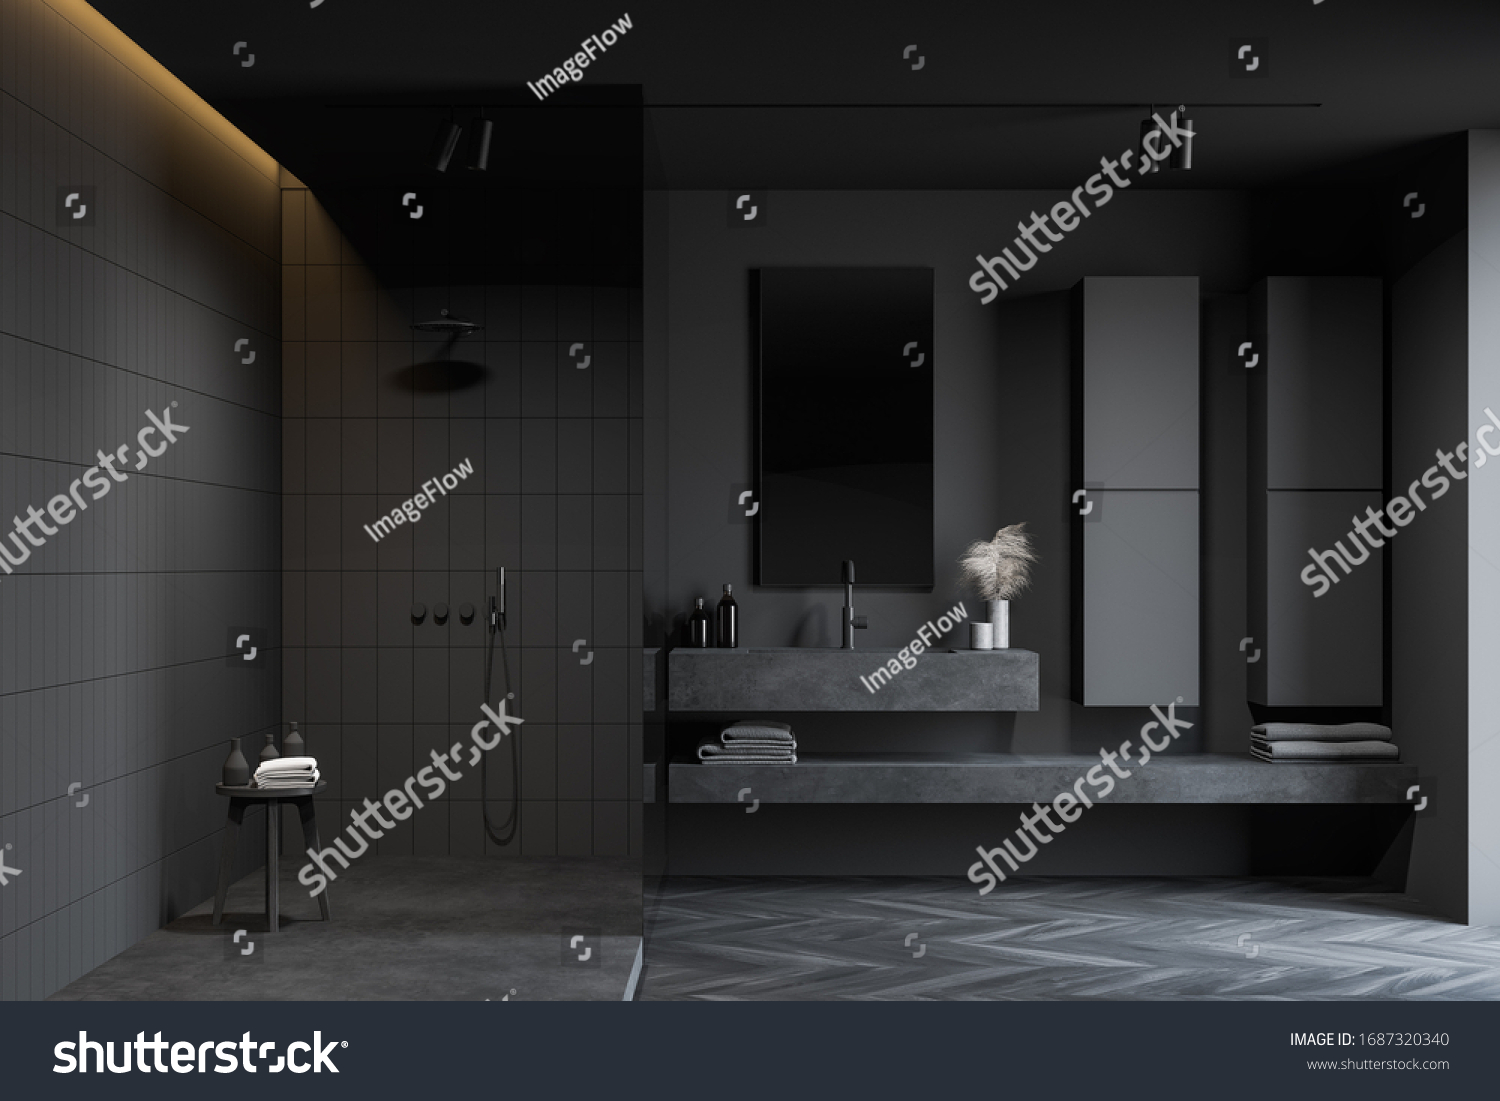 77,753 Dark bathroom Images, Stock Photos & Vectors | Shutterstock